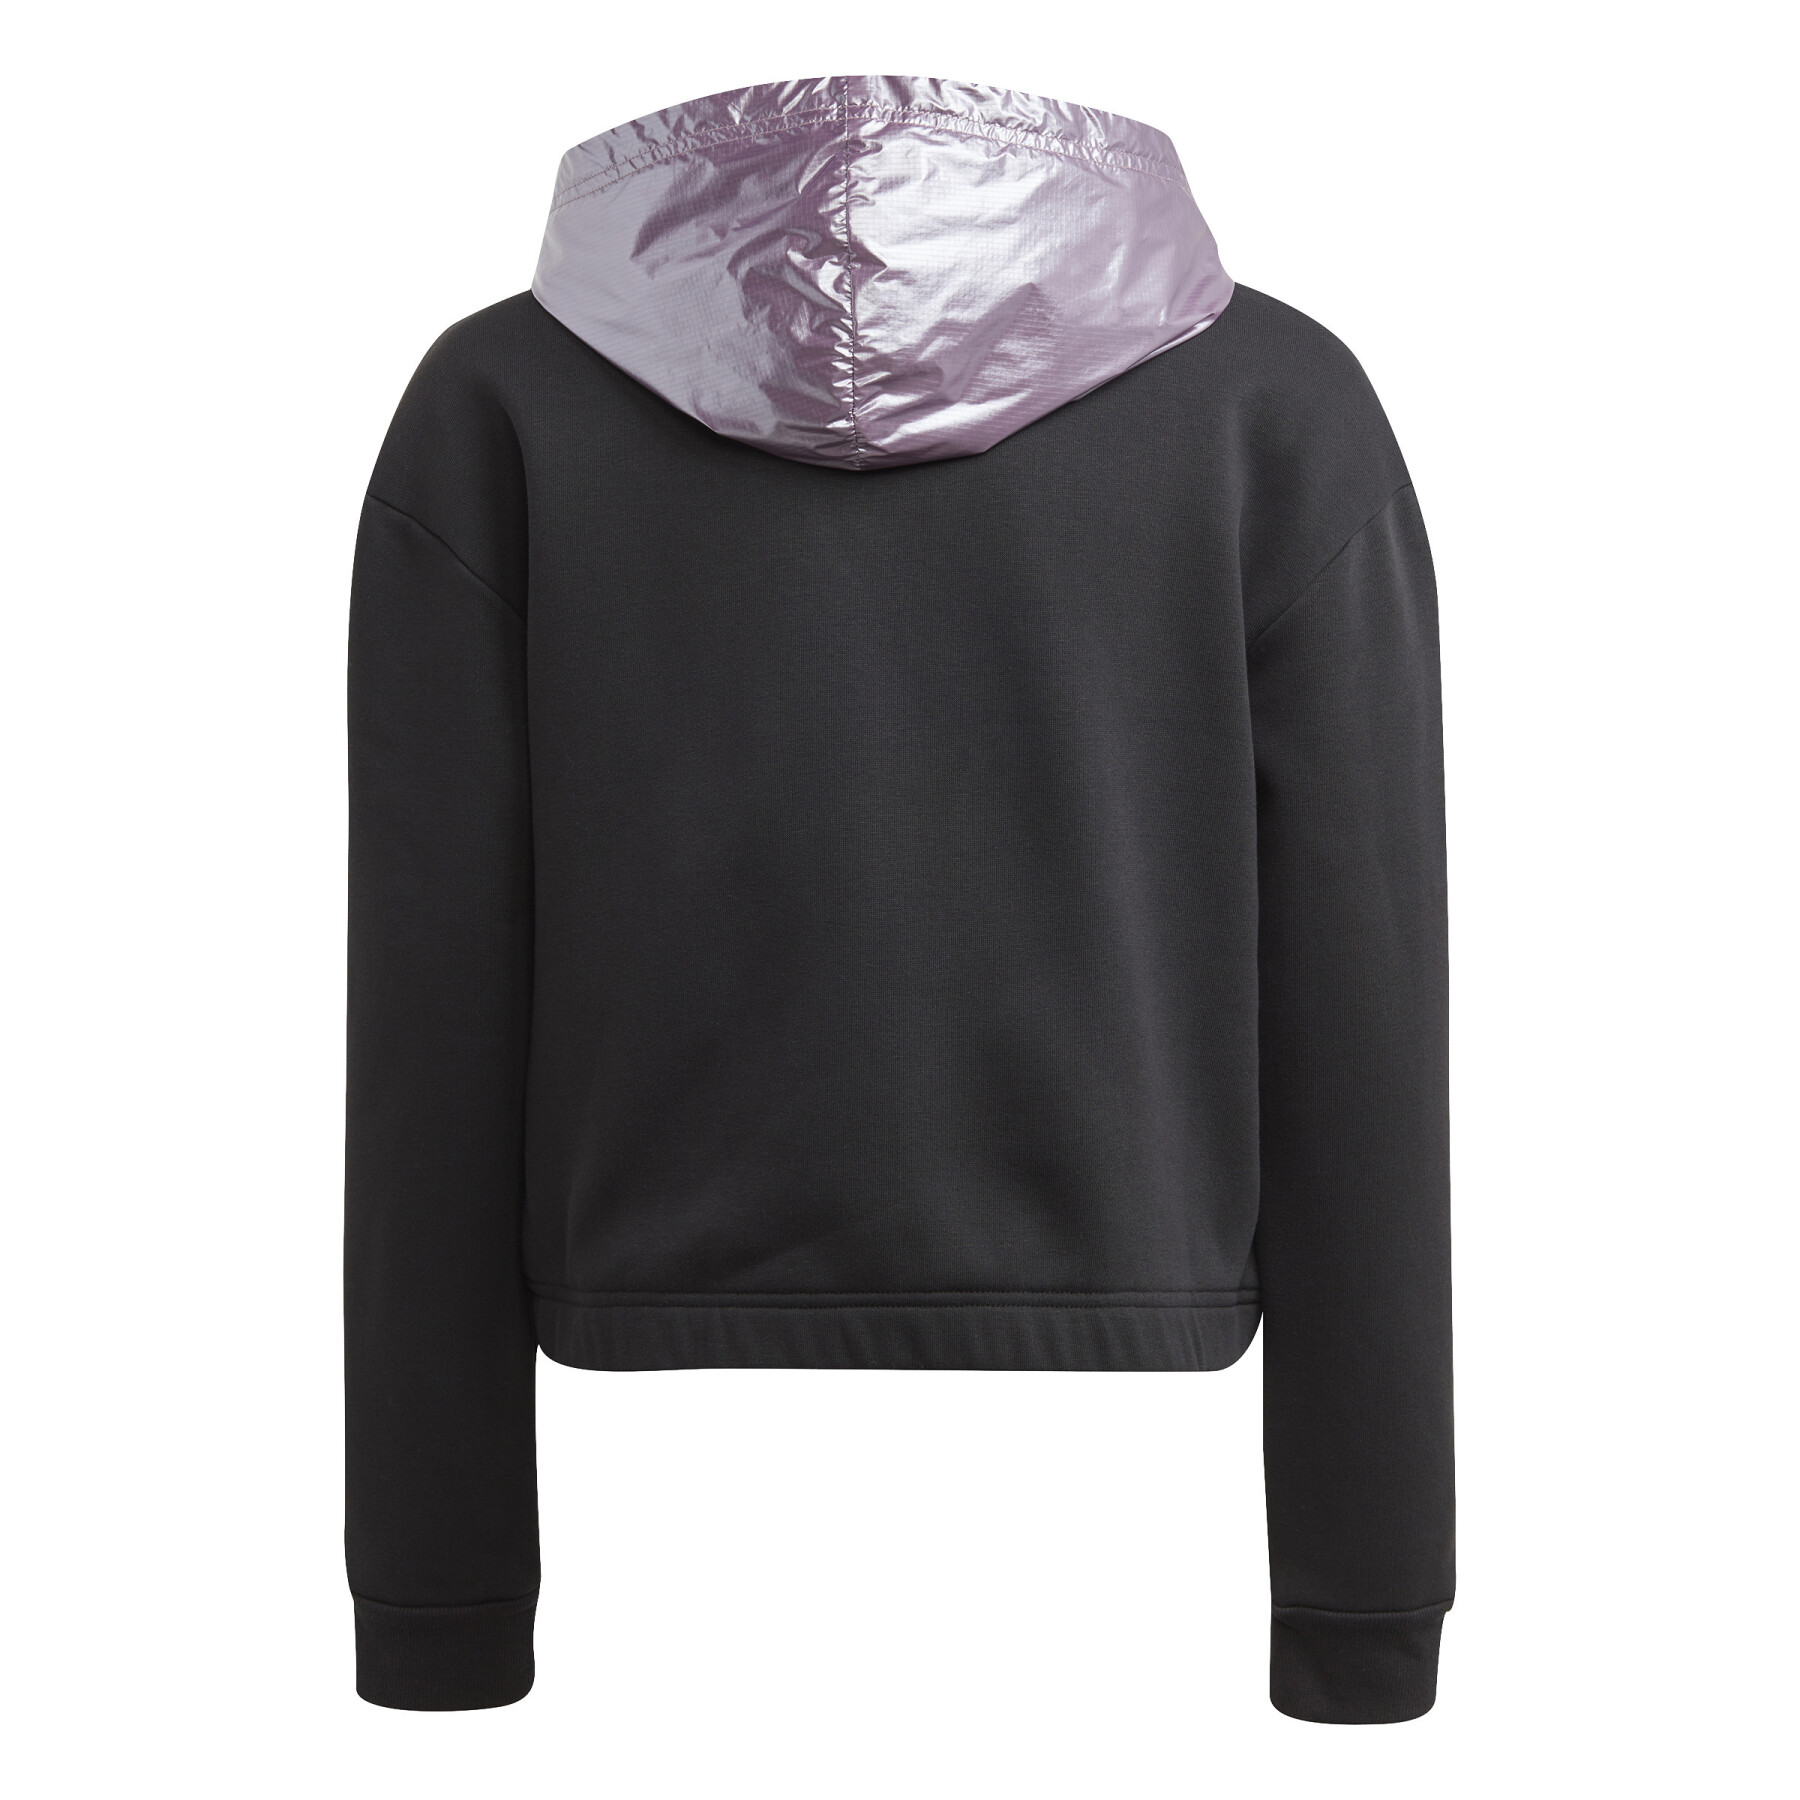 Kurzes Sweatshirt mit Kapuze aus Molton, Mädchen adidas Glam